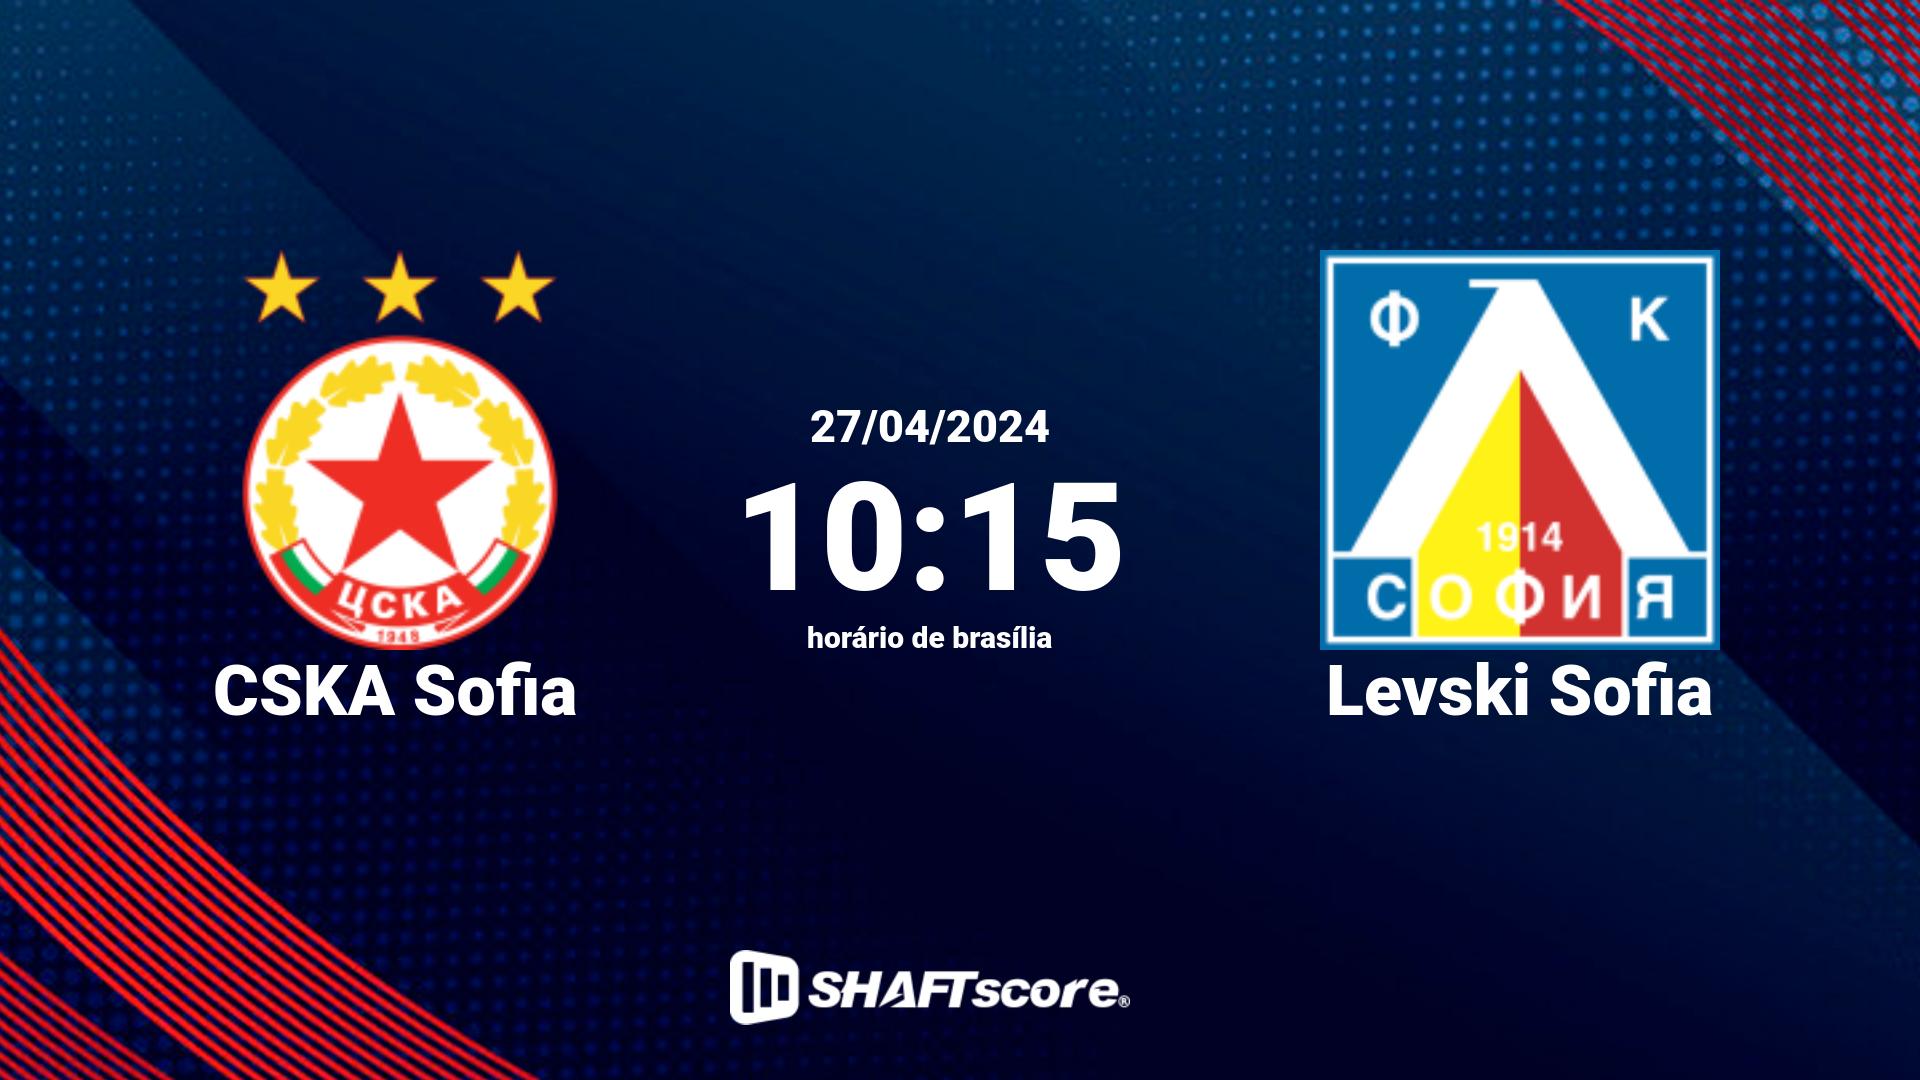 Estatísticas do jogo CSKA Sofia vs Levski Sofia 27.04 10:15